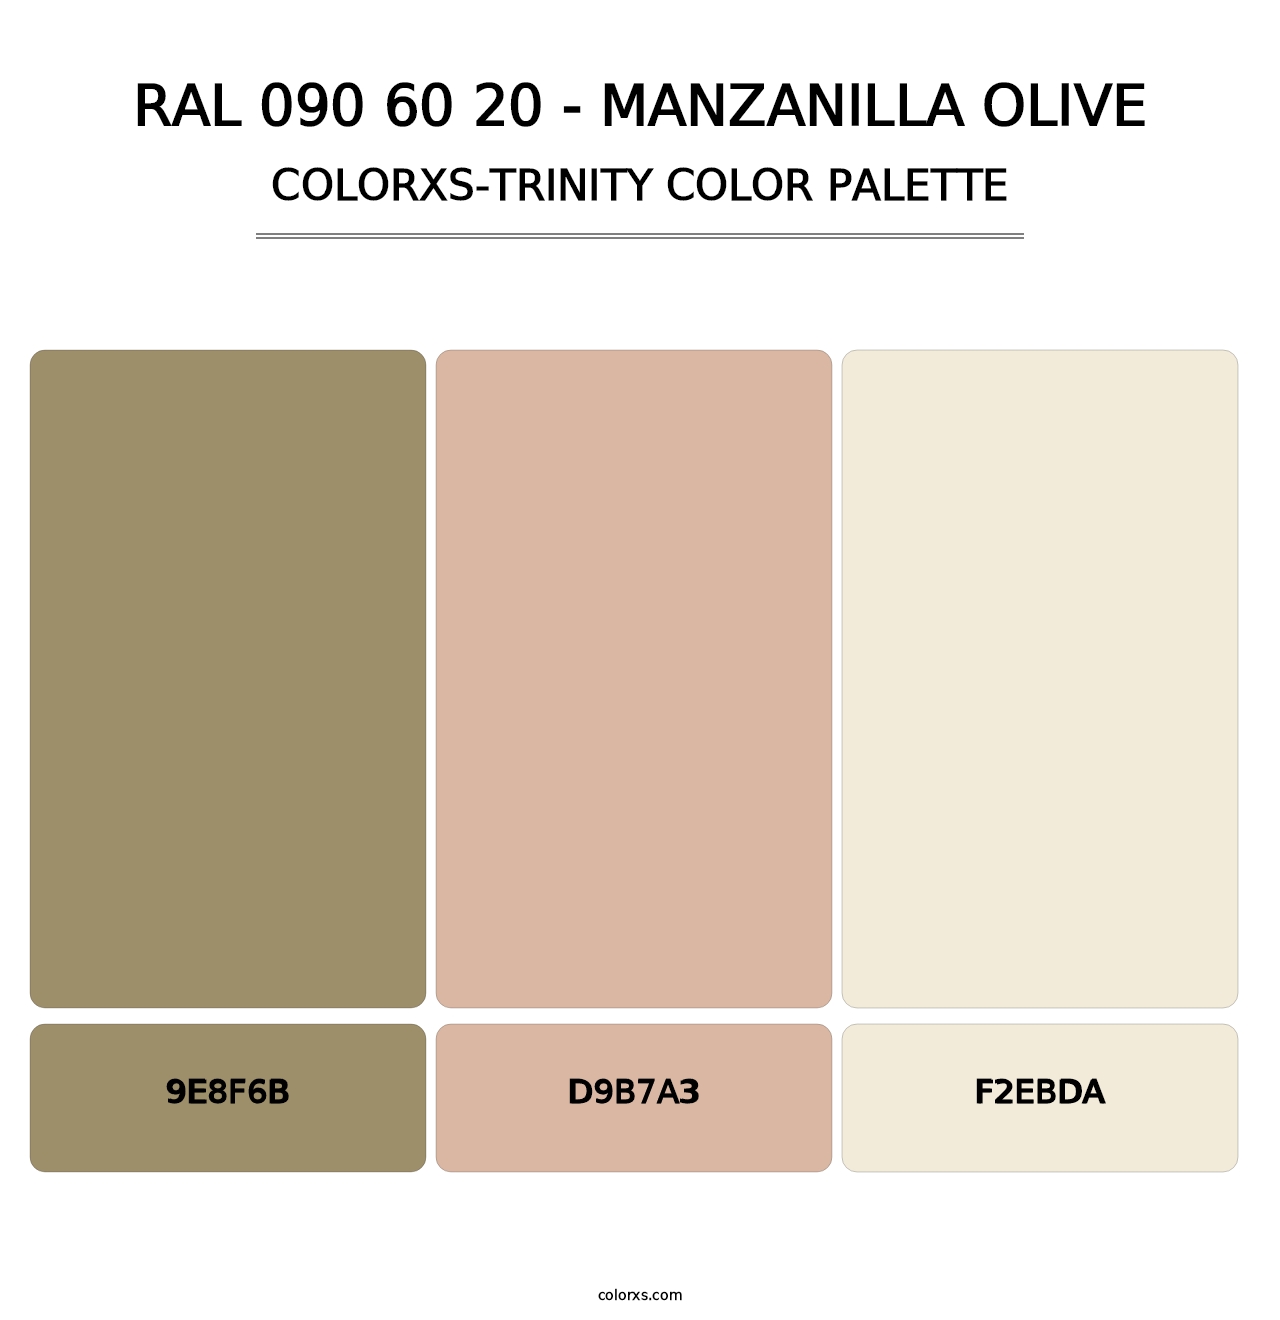 RAL 090 60 20 - Manzanilla Olive - Colorxs Trinity Palette